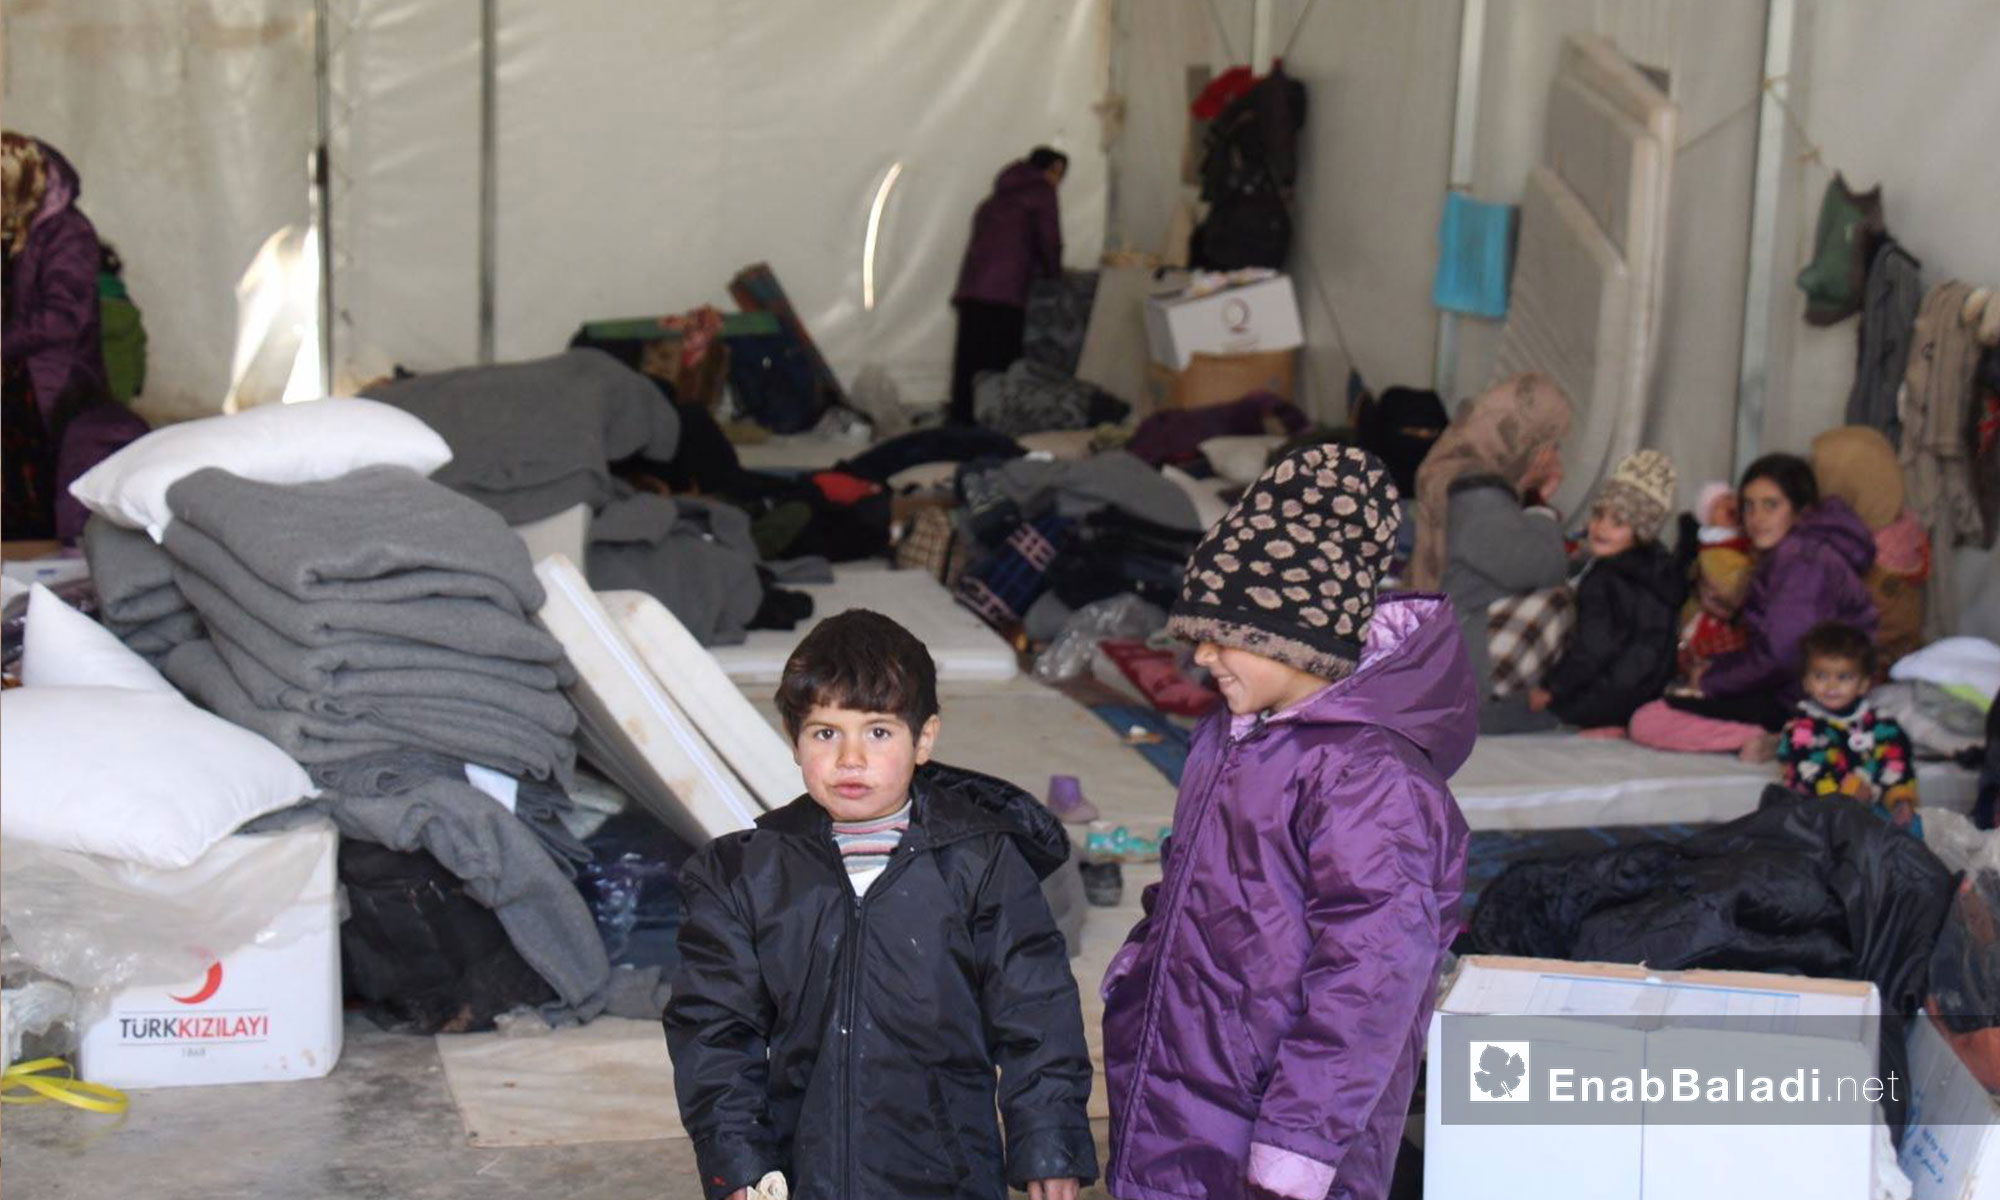 أطفال عراقيين في مركز استقبال مؤقت في إعزار بريف حلب الشمالي - كانون الأول 2016 (عنب بلدي)